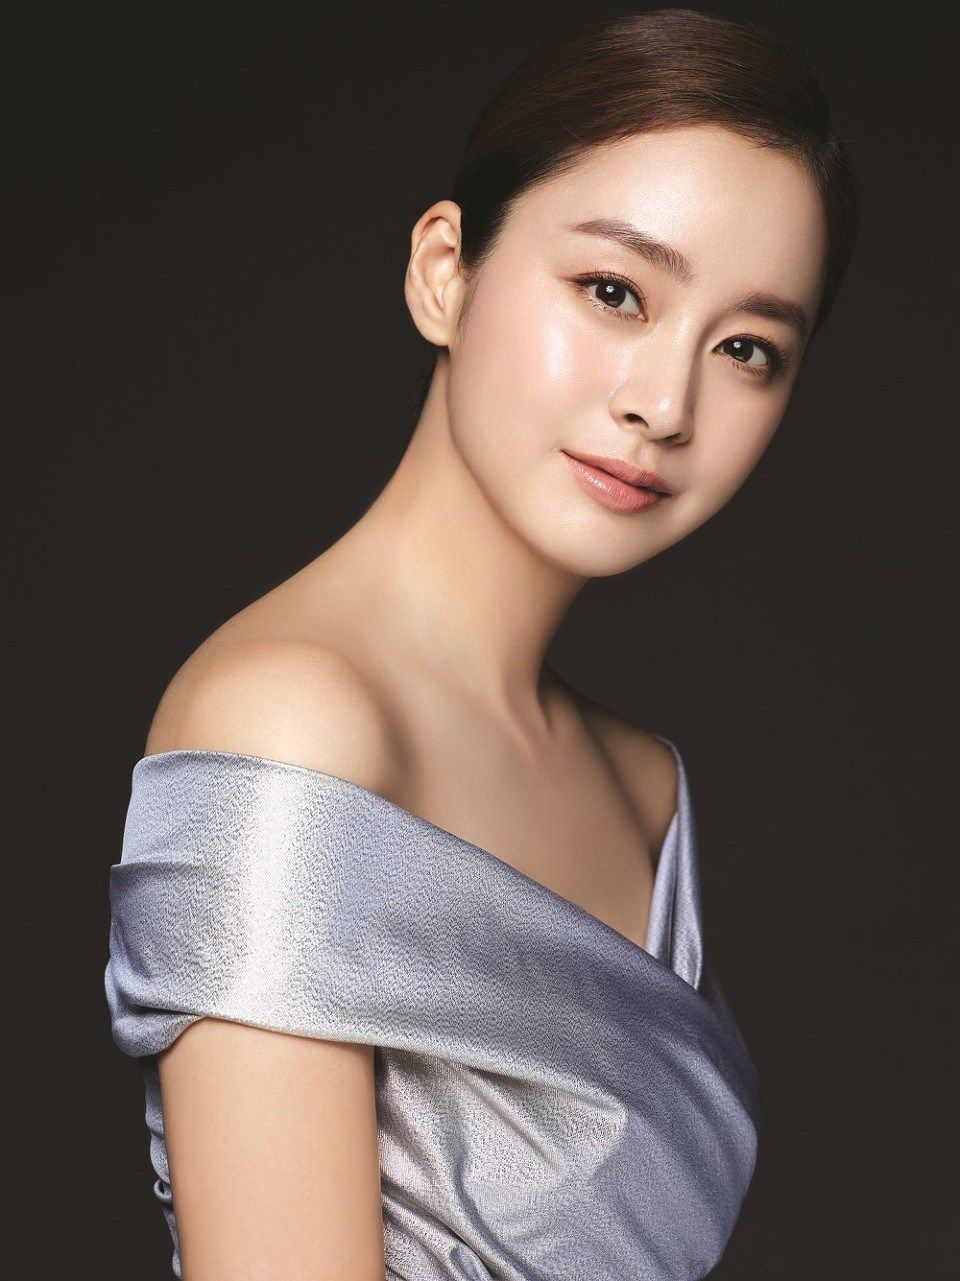 Top 10 mỹ nhân Hàn Quốc thế kỷ 21: Bộ ba nữ thần "Tae - Hye - Ji" đều có mặt nhưng đỉnh cao nhất phải là người đẹp huyền thoại 49 tuổi này  - Ảnh 4.